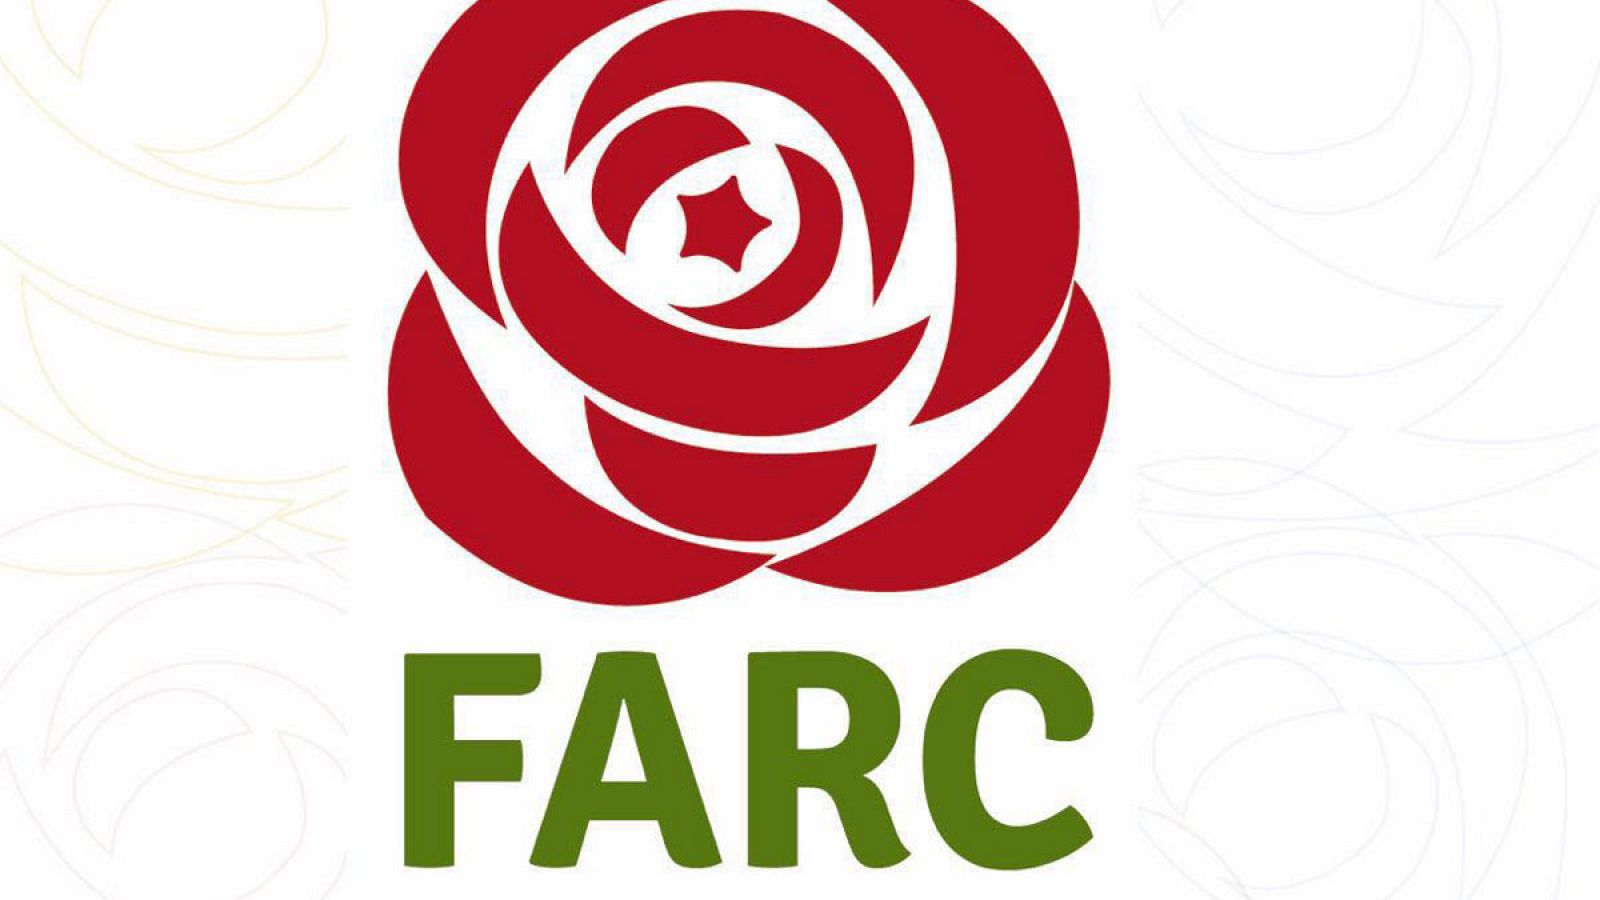 Fotografía cedida por el partido político FARC de su nuevo logo.